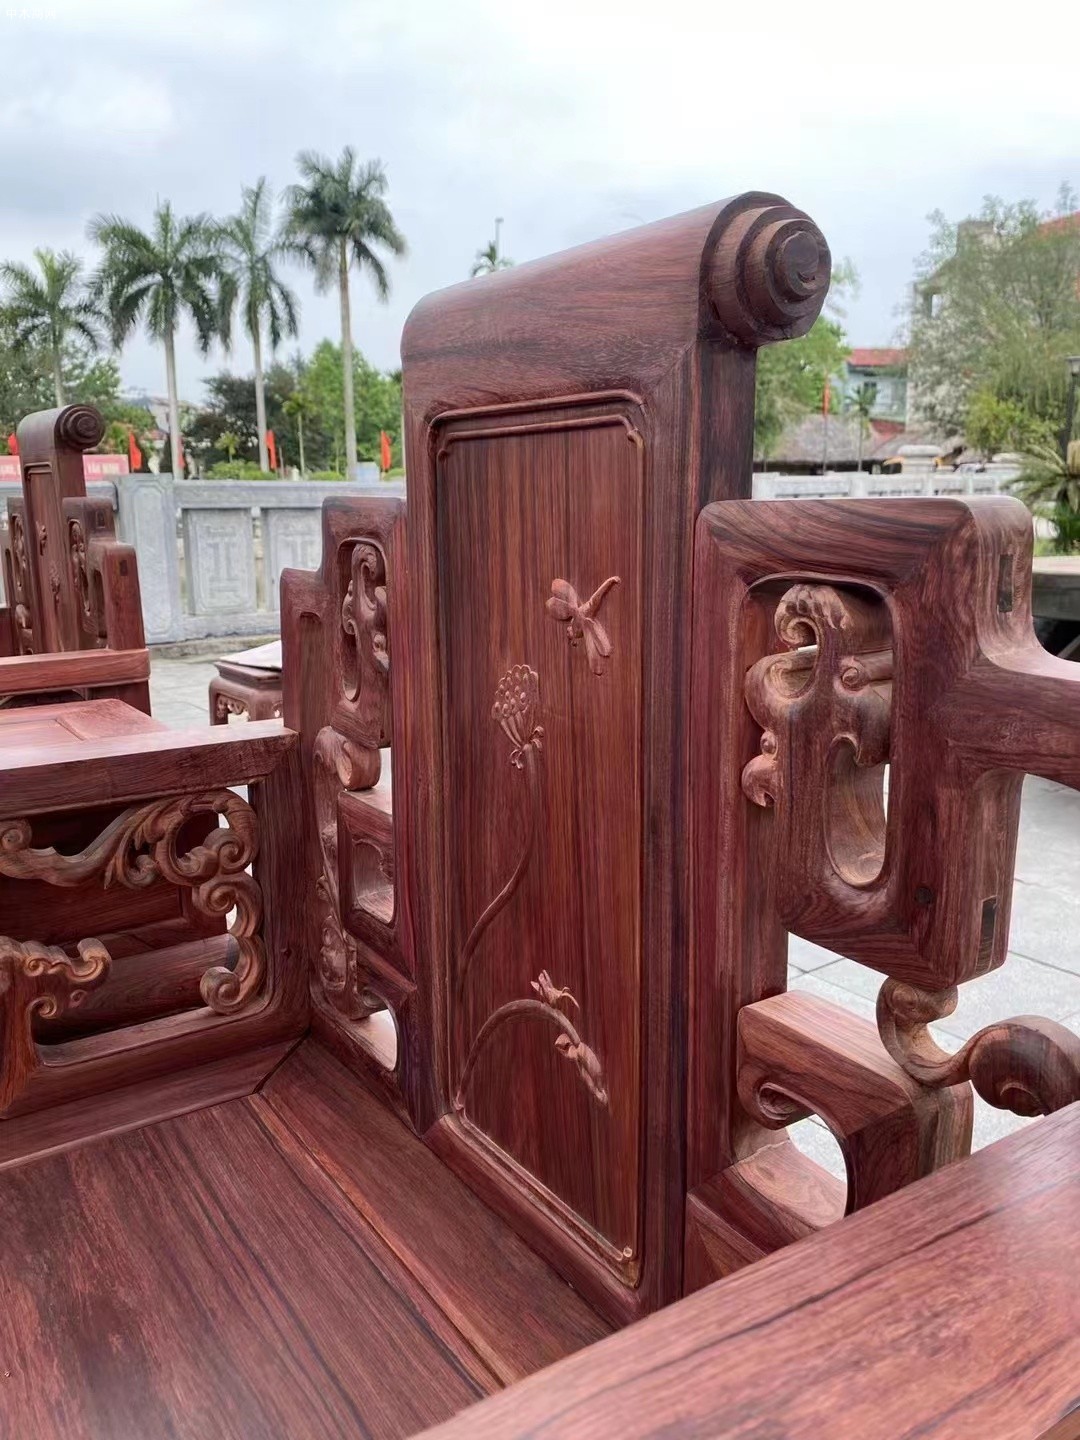 龙之涵红木家具的白酸枝宝座沙发是藏家的深爱和回忆品牌